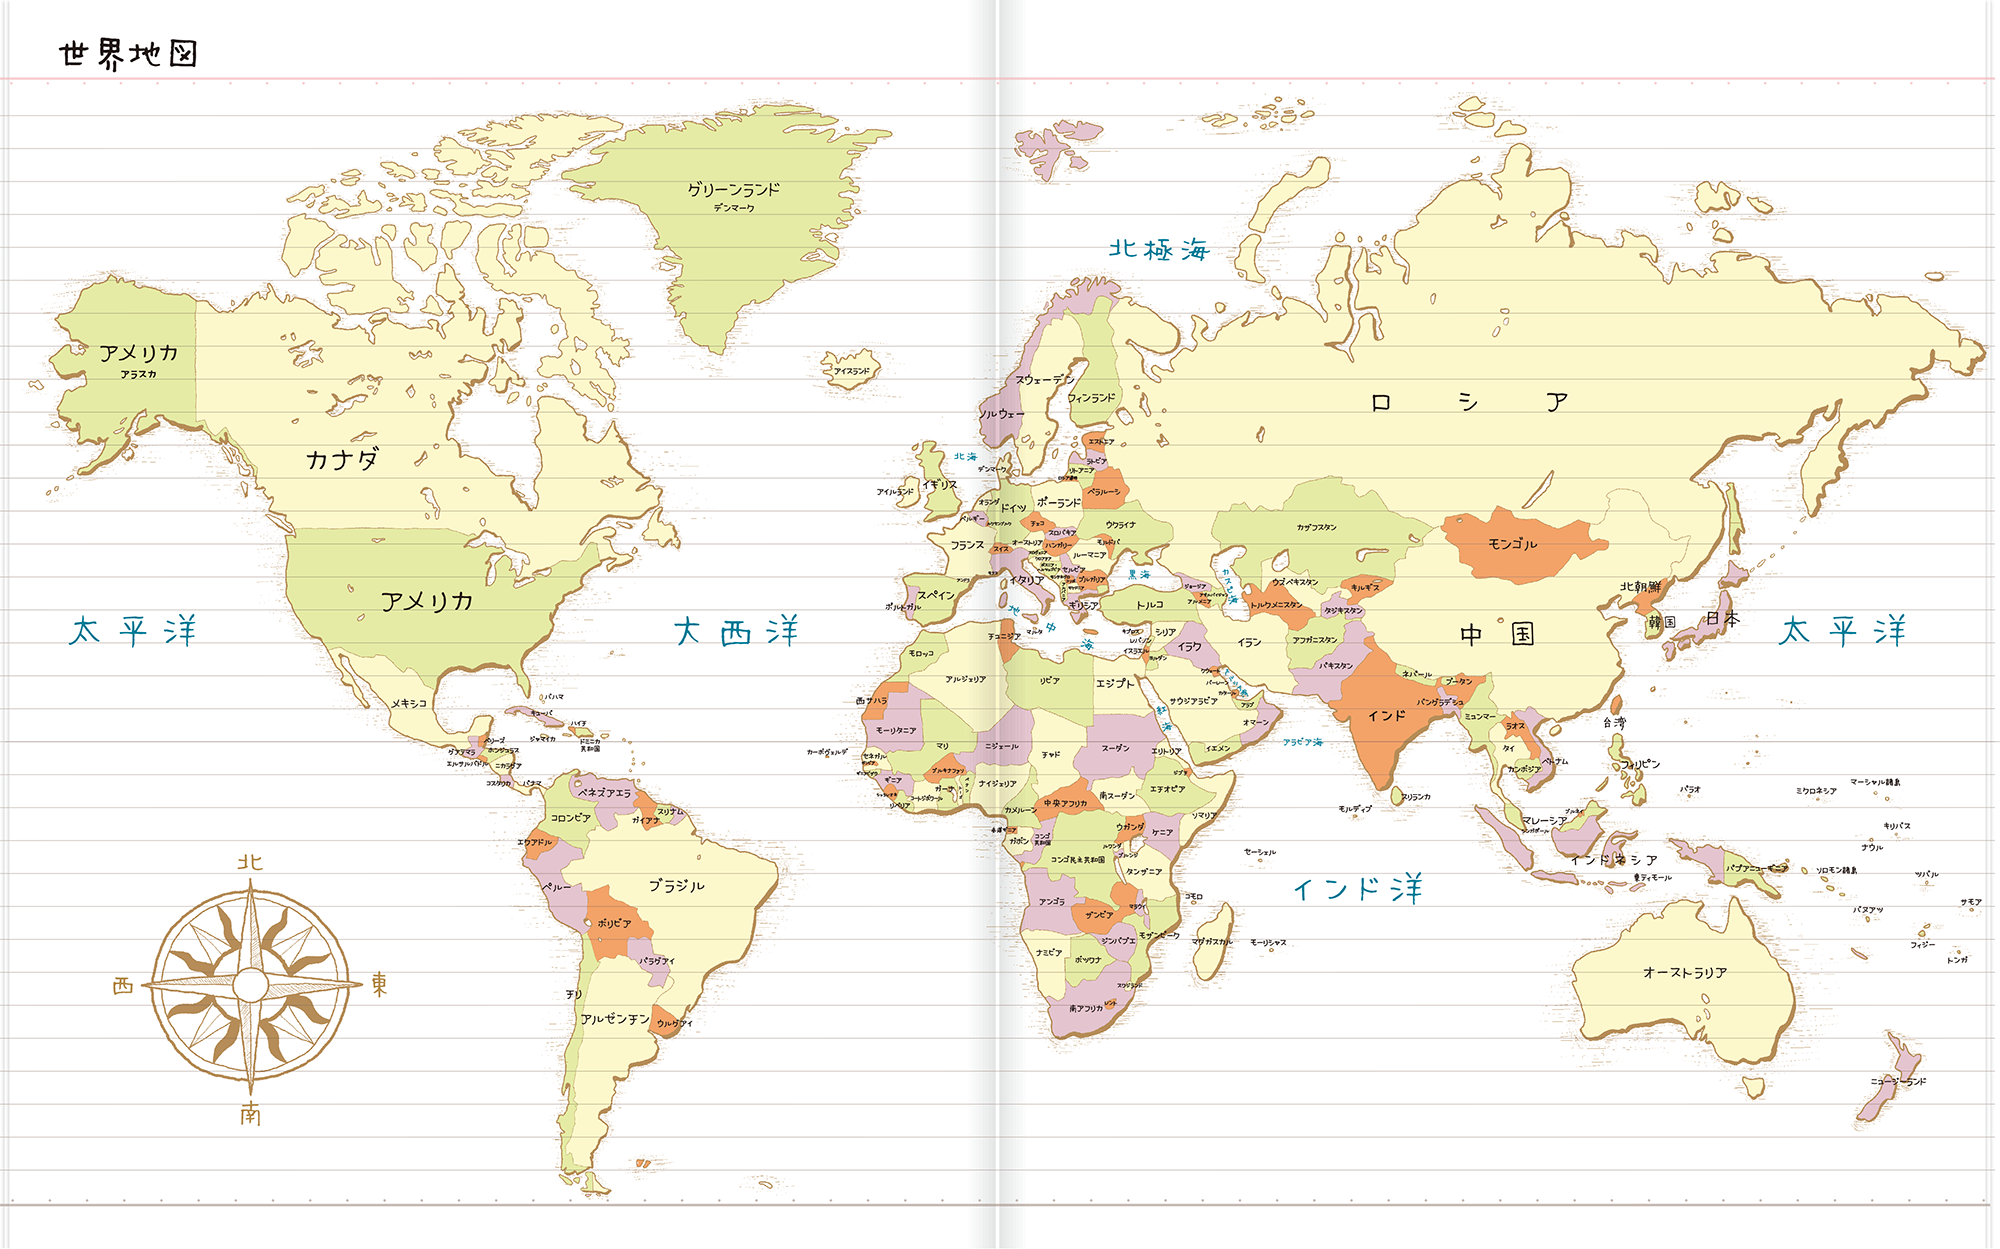 世界地図 前へ 次へ 世界史ノート サイトについて 年表 世界地図 ブログ 参考書籍 Instagram Twitter Note C 世界史ノート